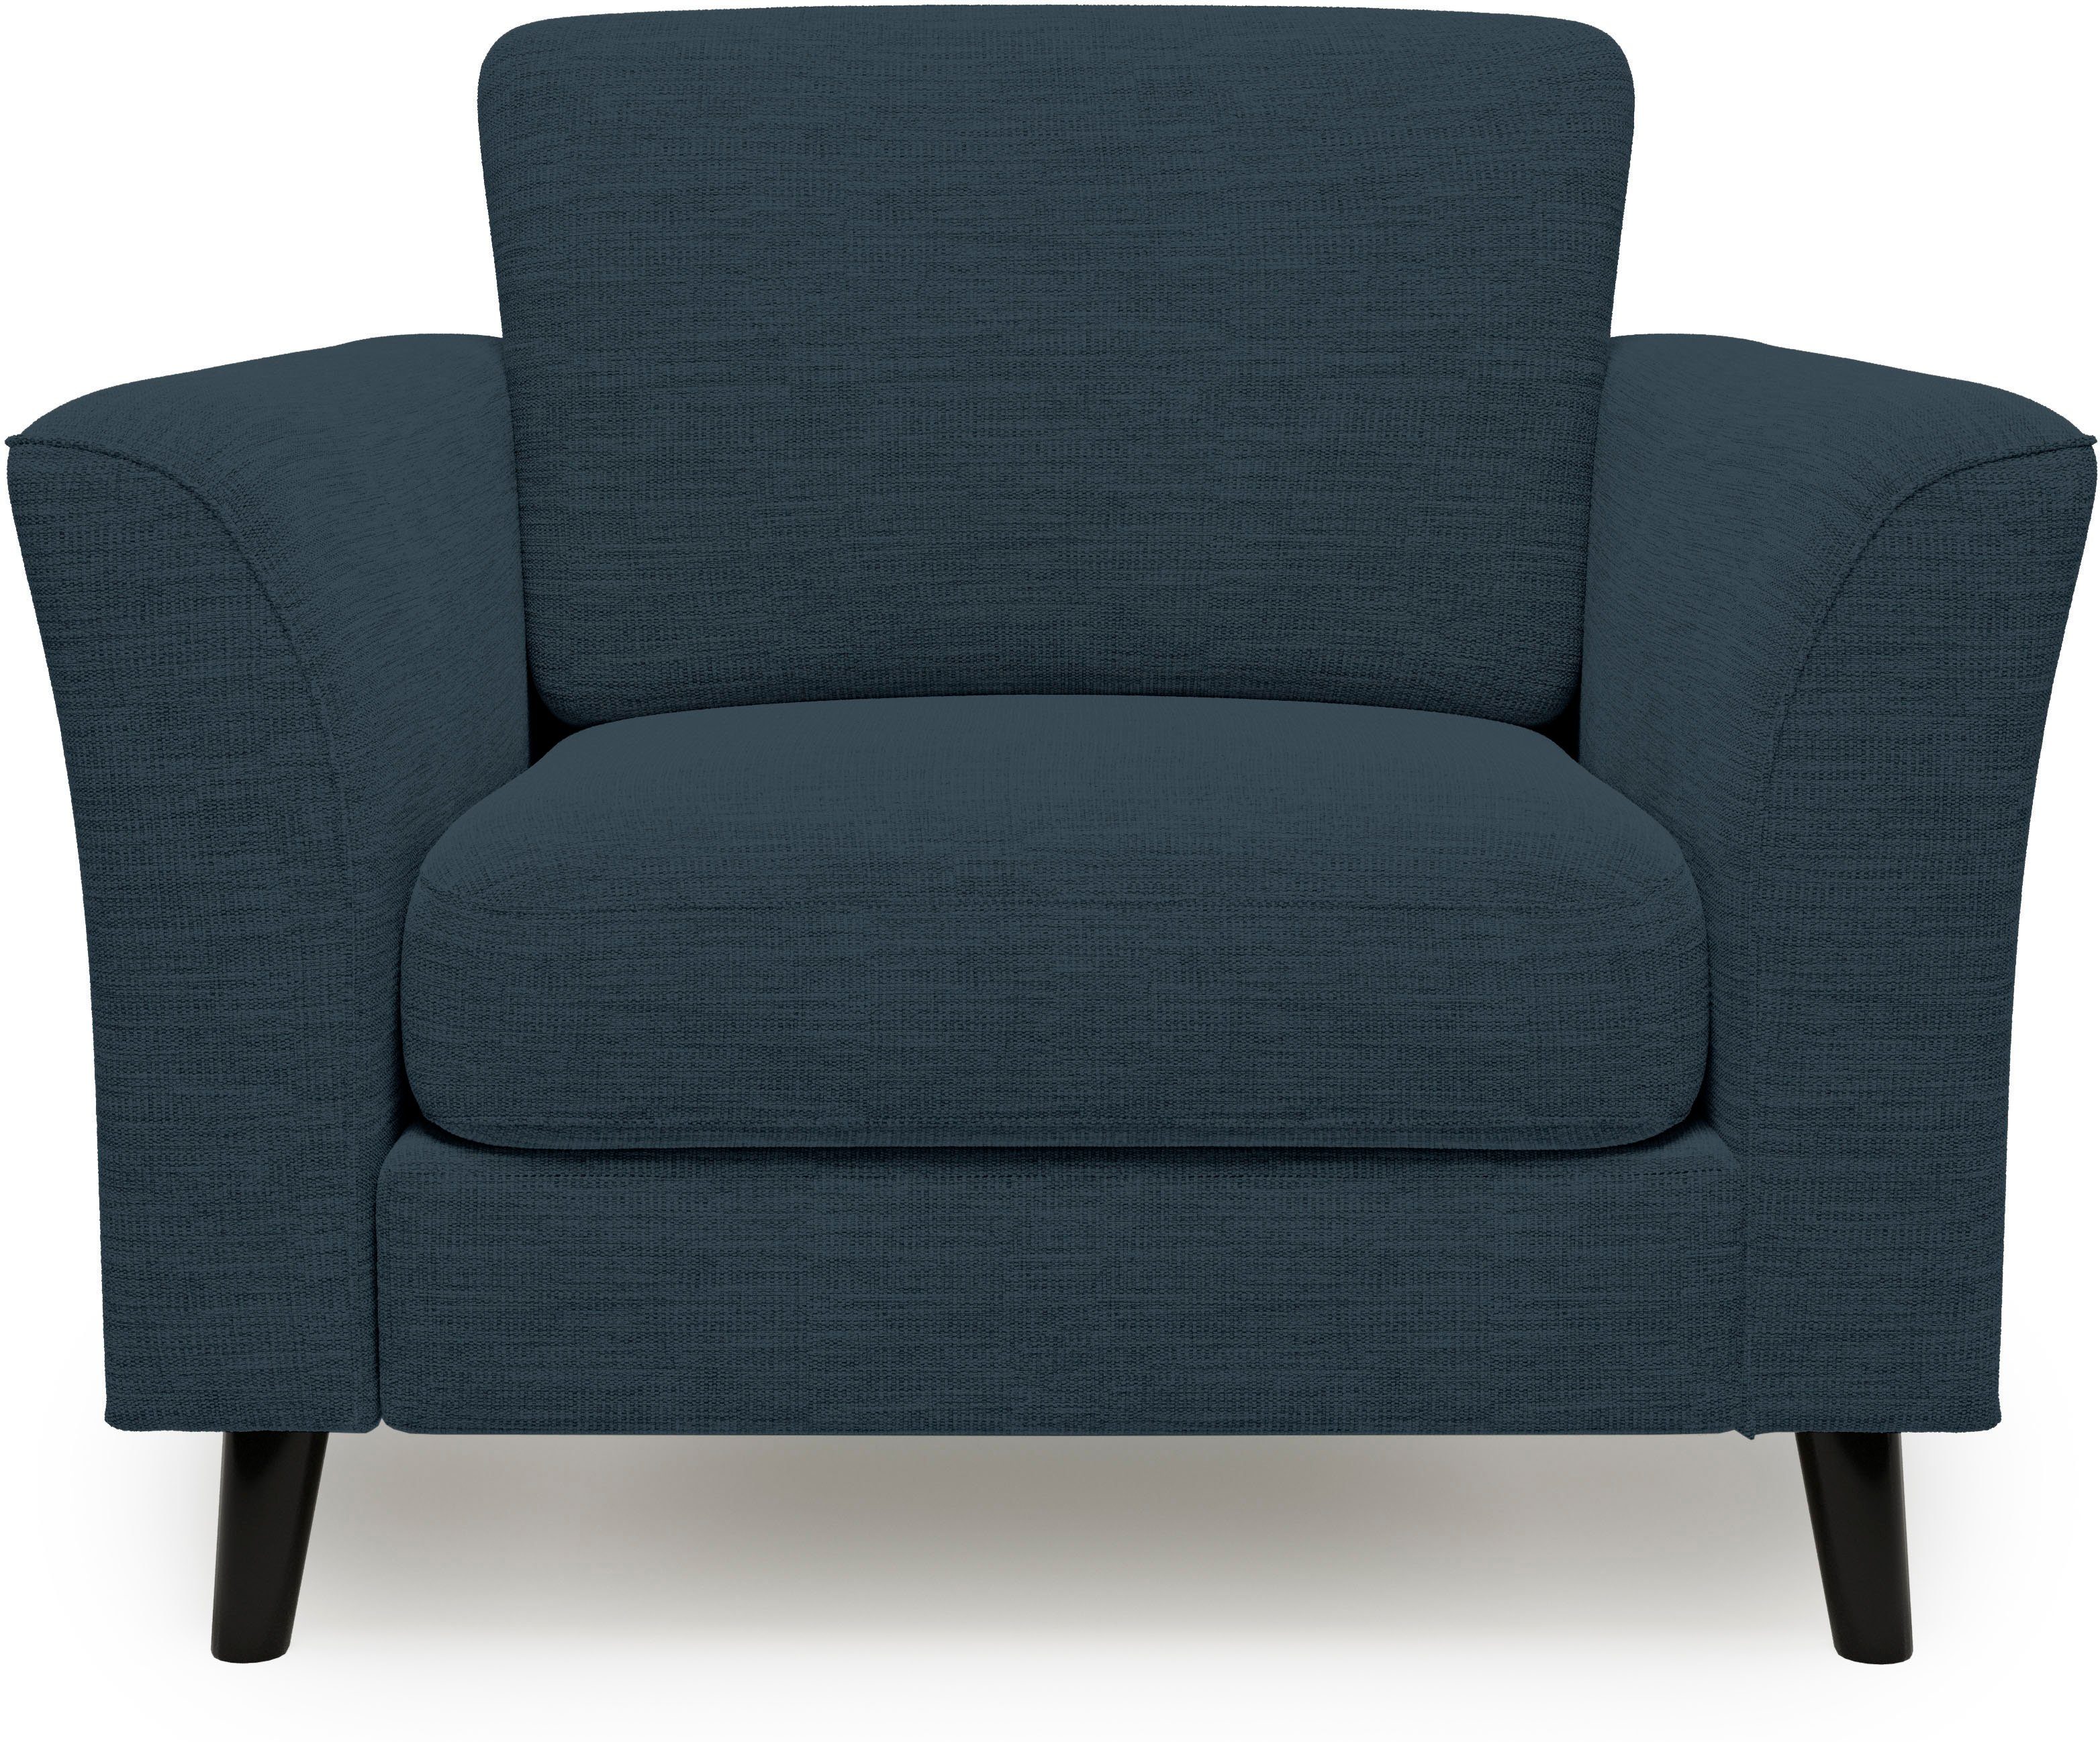 Home affaire Sessel Gröde, weicher Sitzkomfort, aus schwarzen Holzfüßen blue